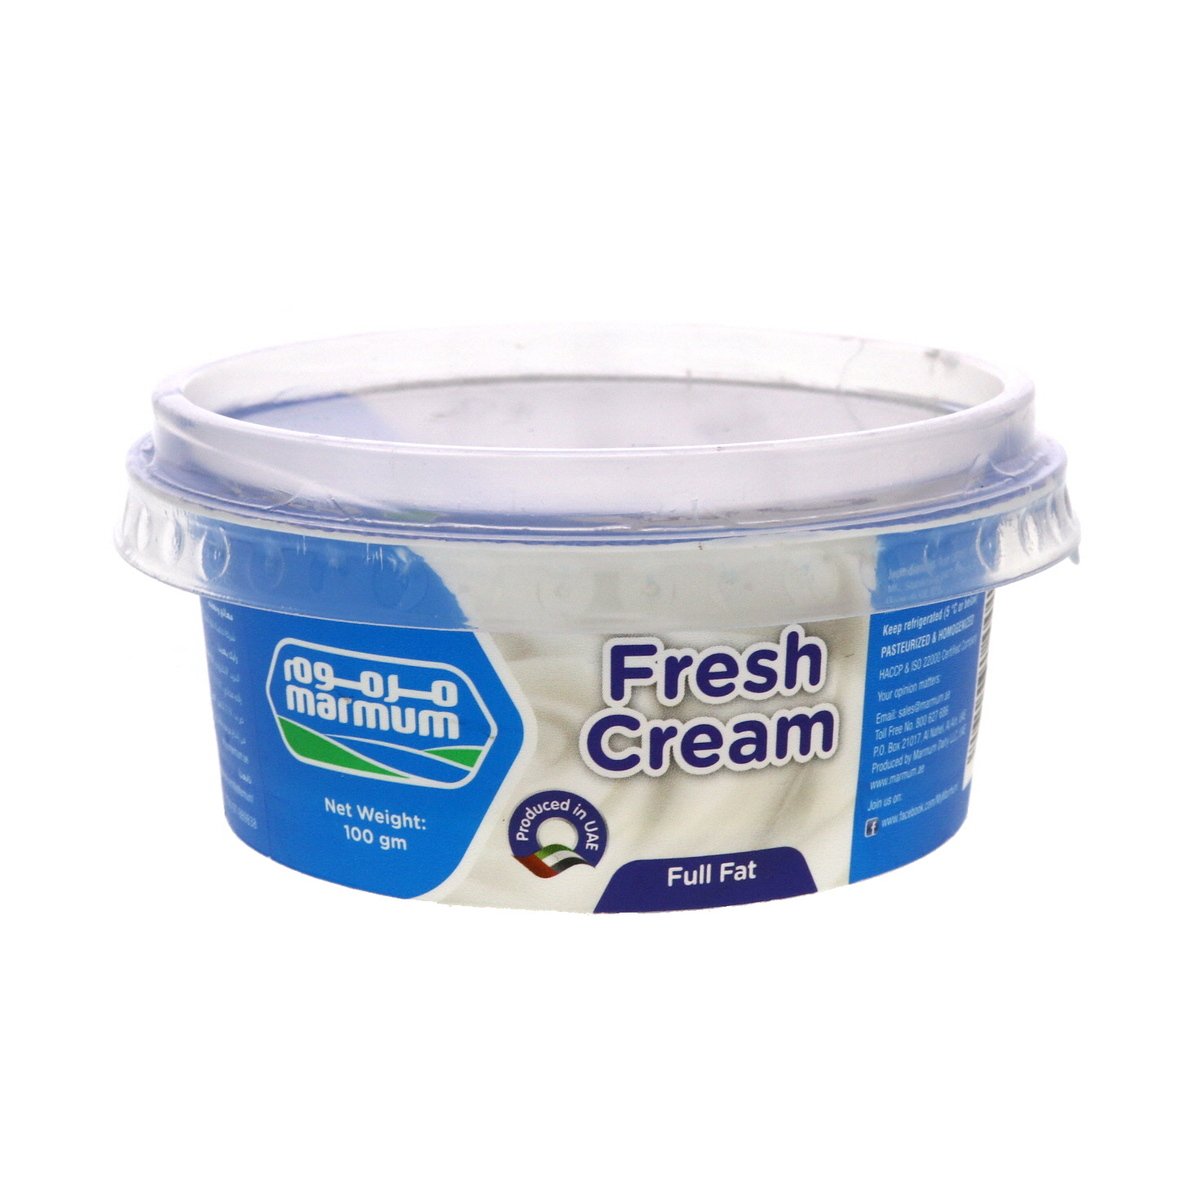 اشتري قم بشراء مرموم قشطة طازجة كاملة الدسم 100جم Online at Best Price من الموقع - من لولو هايبر ماركت Fresh Cream في الامارات